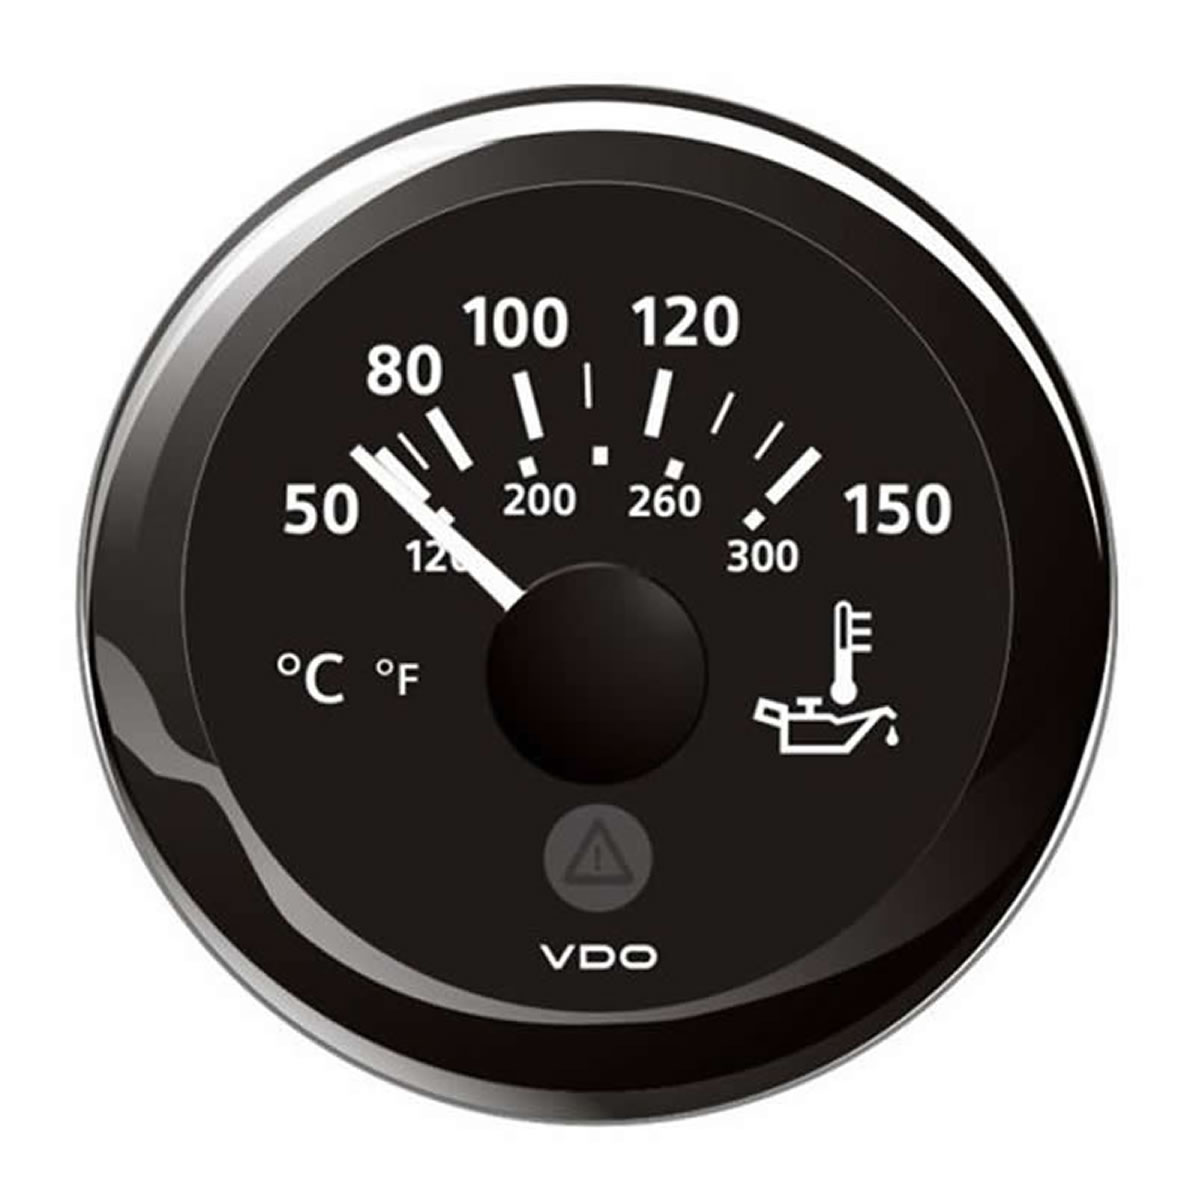 Marine VDO Engine Oil Temperature Gauges 150C